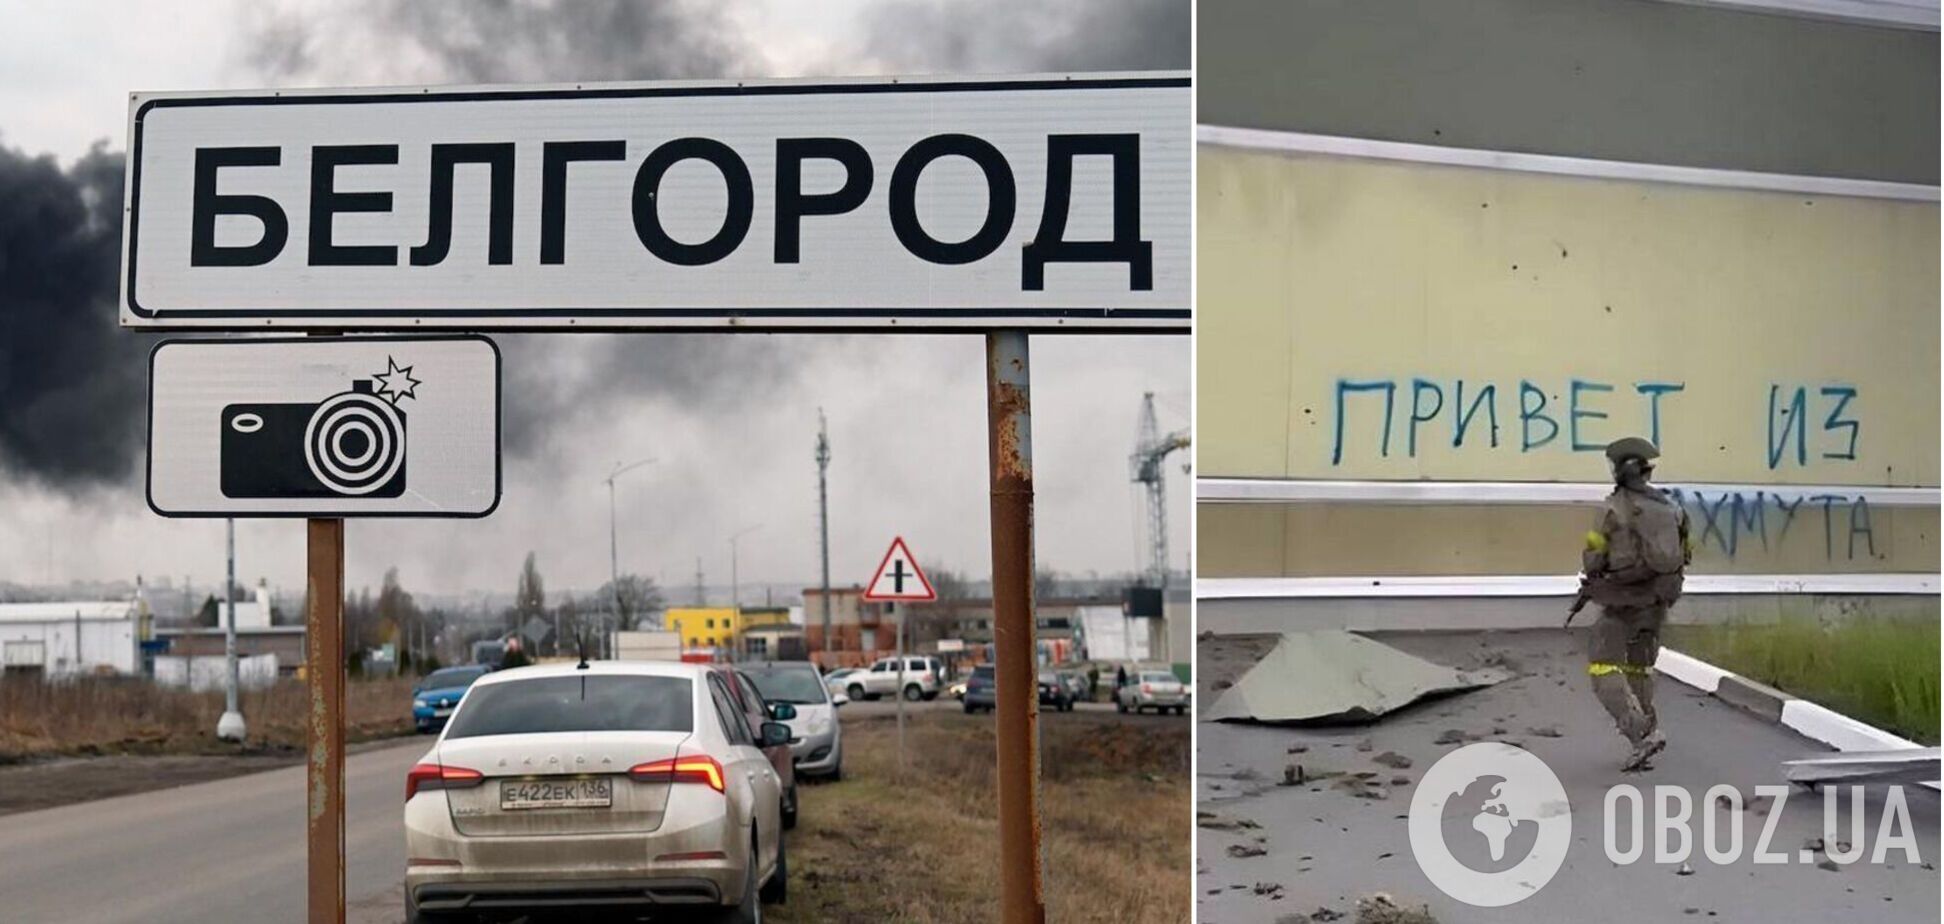 'Уезжают массово, кому есть куда ехать': жители Белгородской области смирились с эвакуацией. Перехват